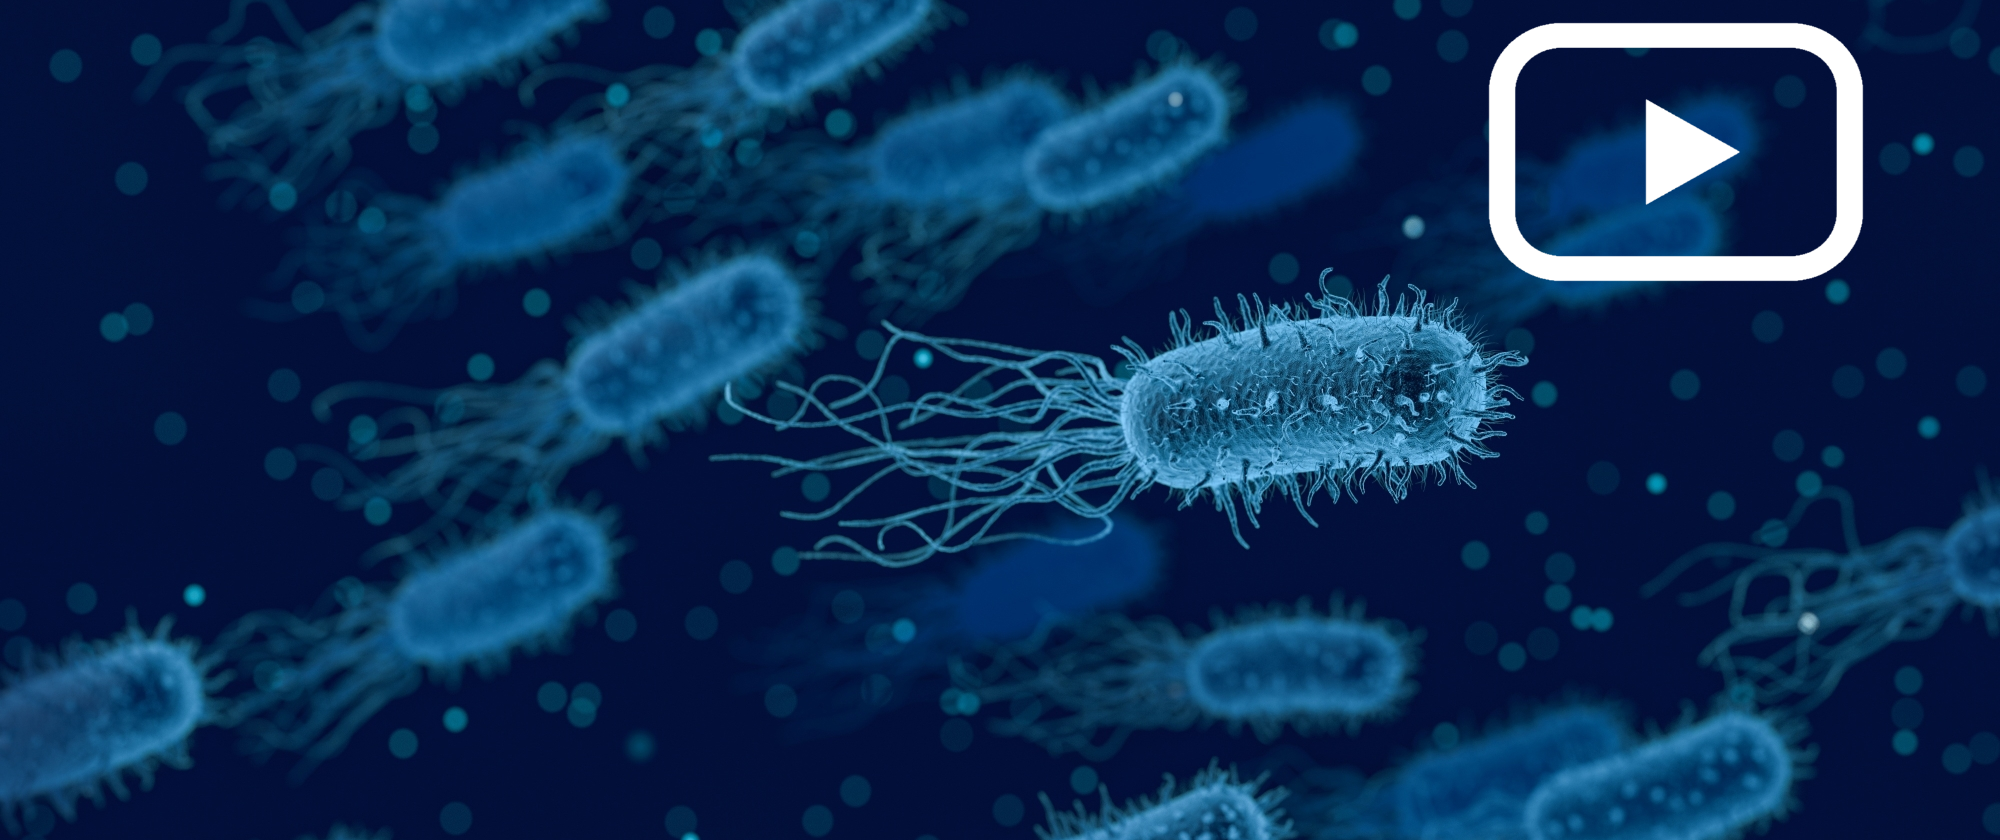 El "quorum sensing", un tipus de comunicació bacteriana, consisteix en la regulació de la expressió gènica en resposta a fluctuacions en la densitat poblacional dels microorganismes (Imatge de qimono a Pixabay).